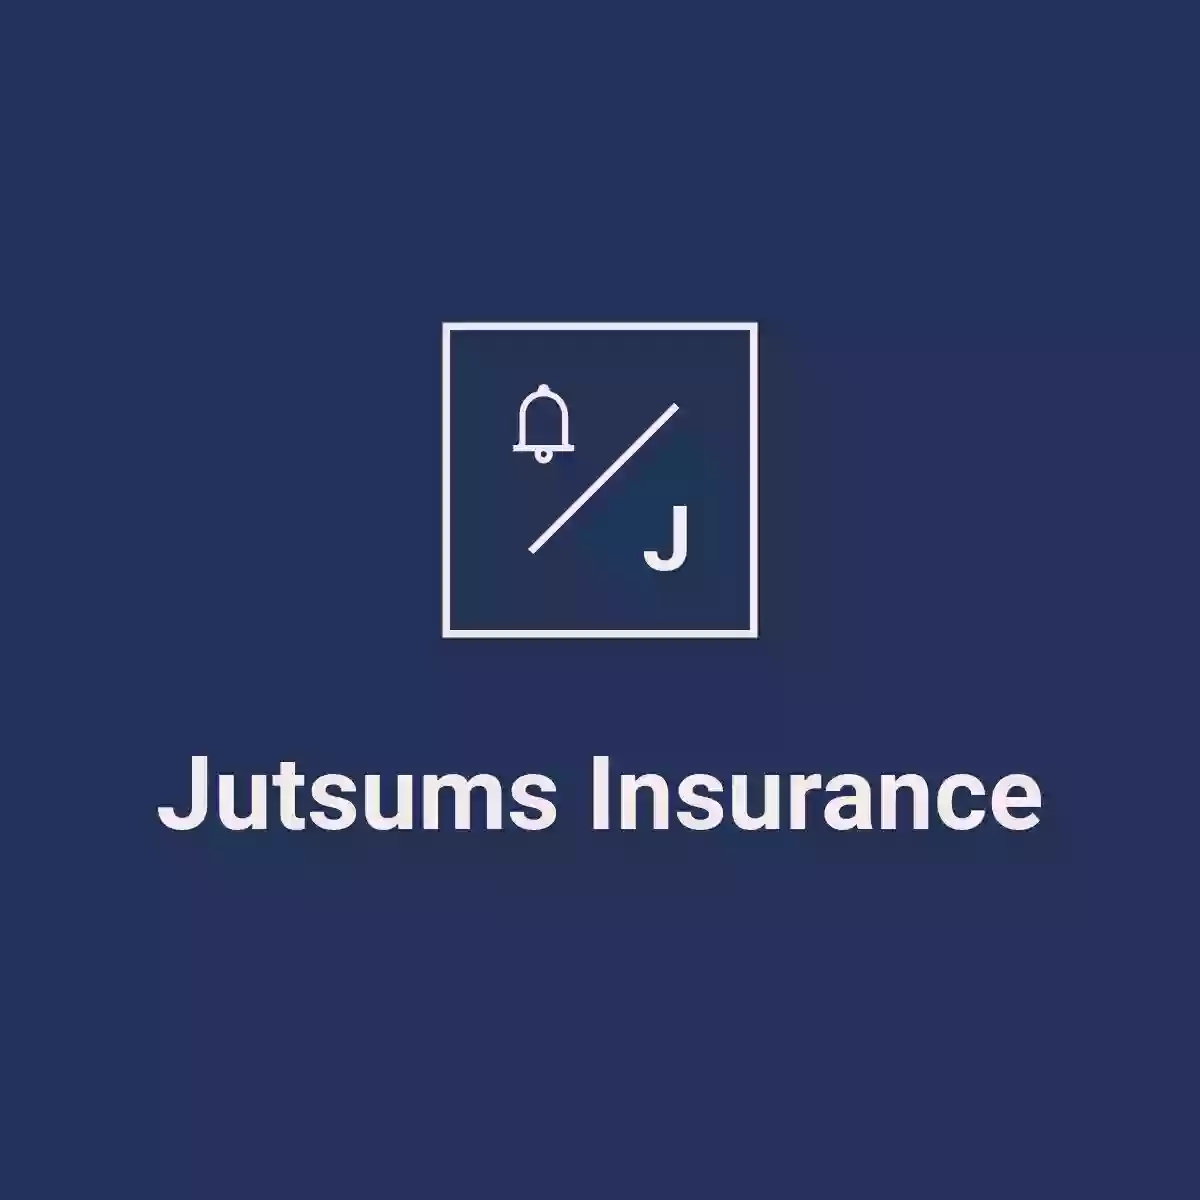 Jutsums Insurance